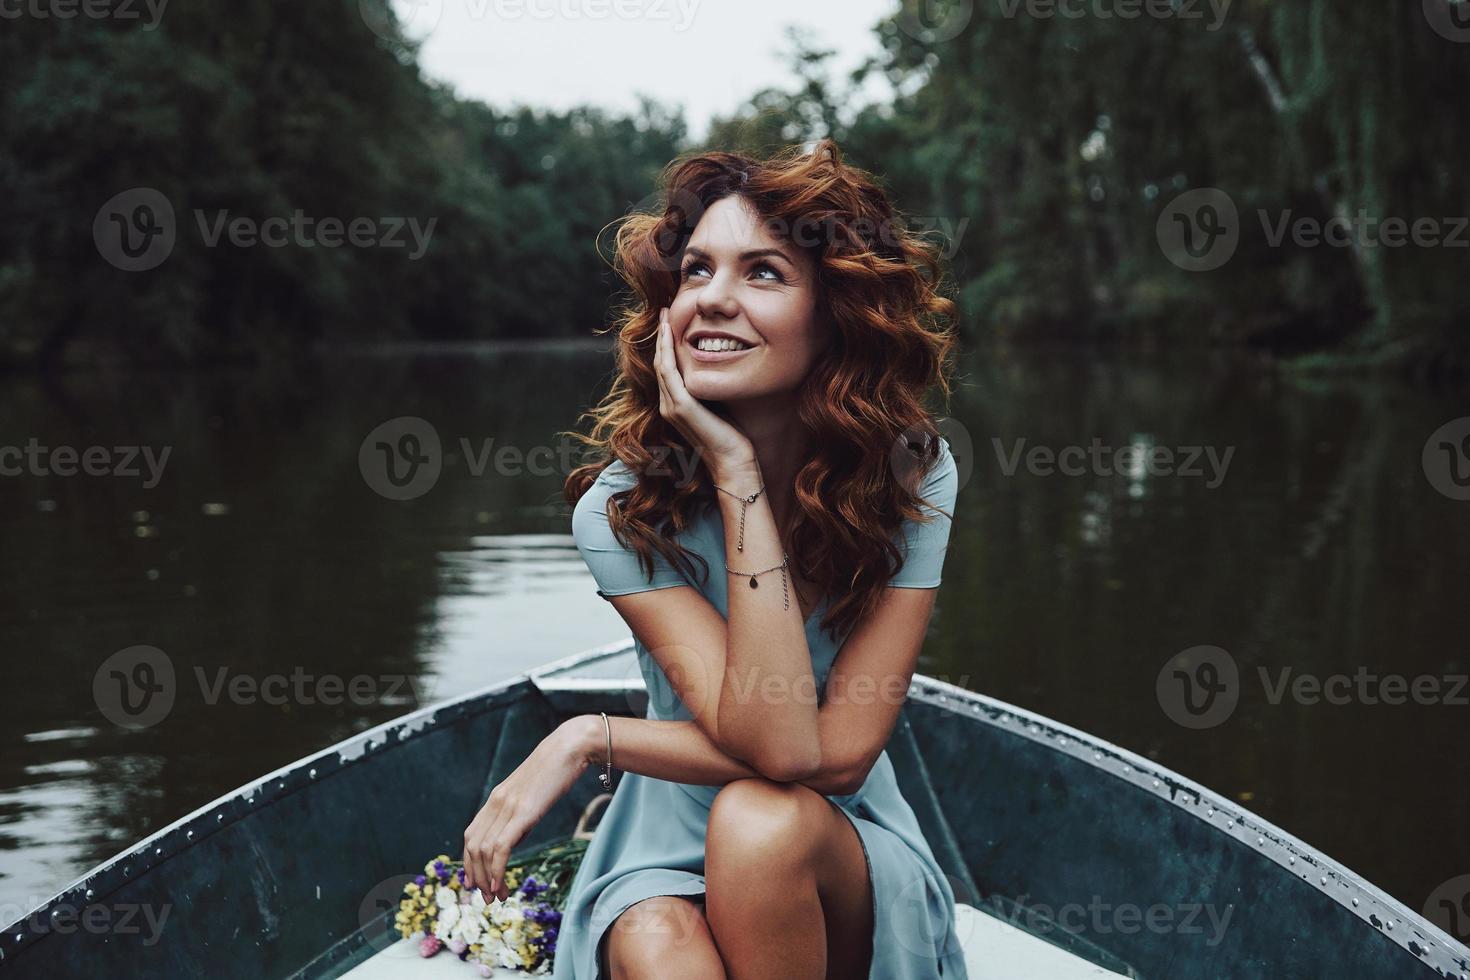 simplemente feliz. bella joven con un vestido elegante mirando hacia otro lado y sonriendo mientras se sienta en el bote foto